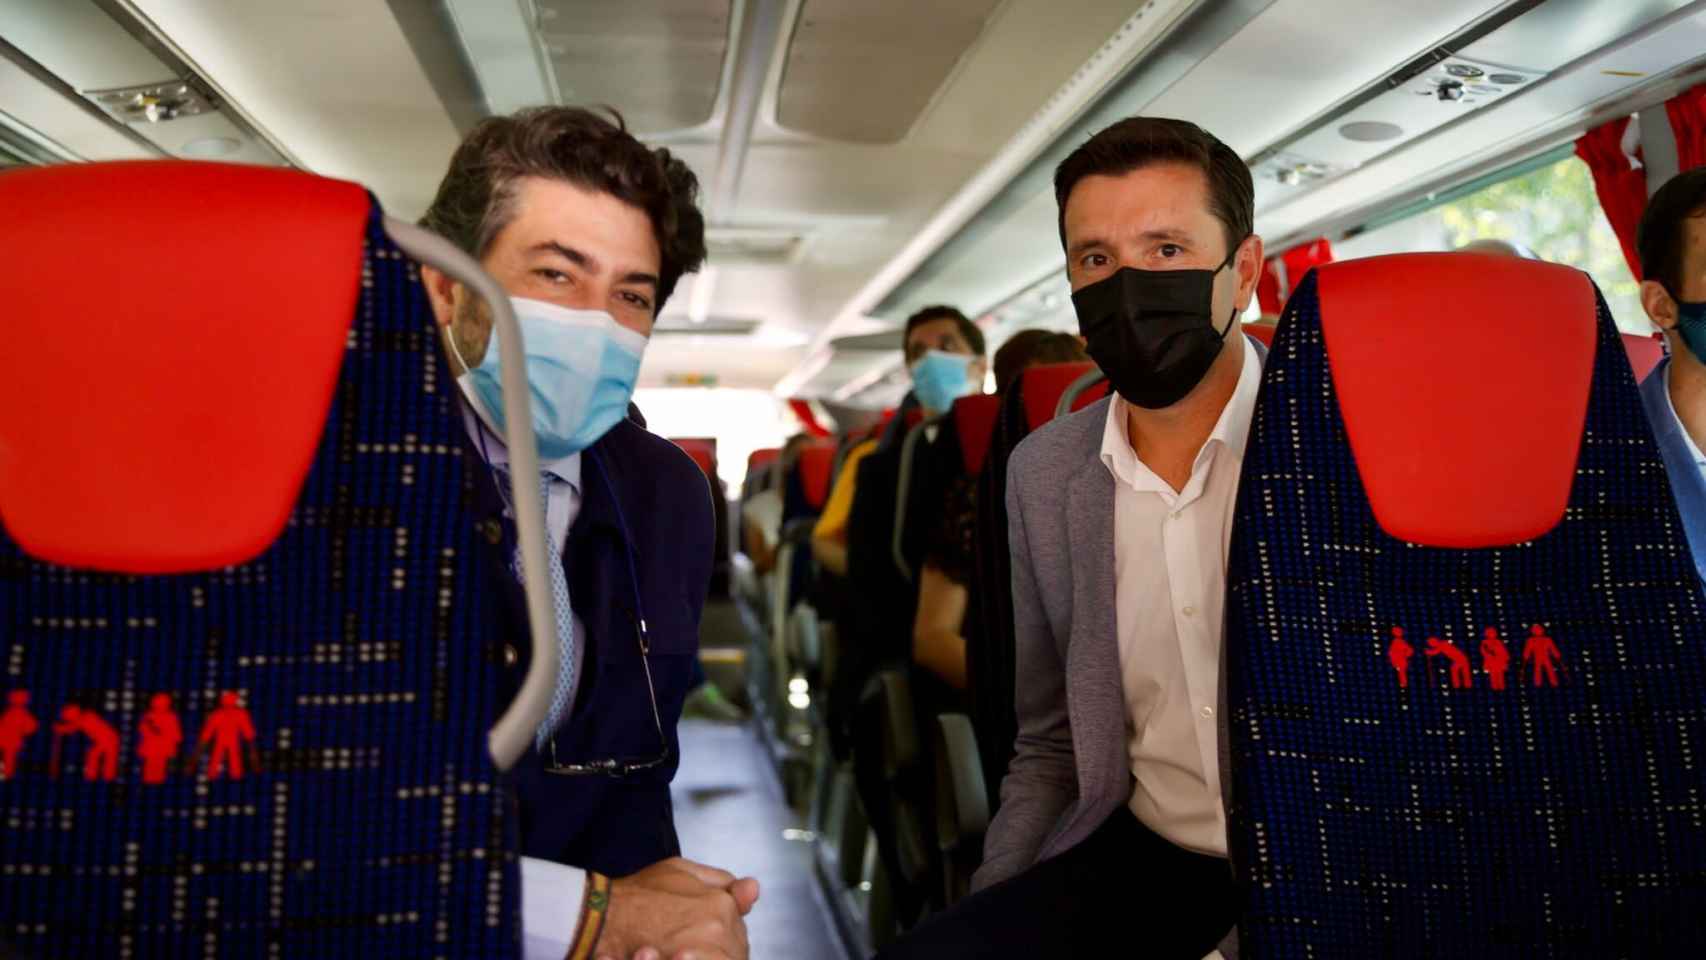 El consejero David Pérez y el alcalde de Valdemorillo, Santiago Villena, montados en el bus inteligente.